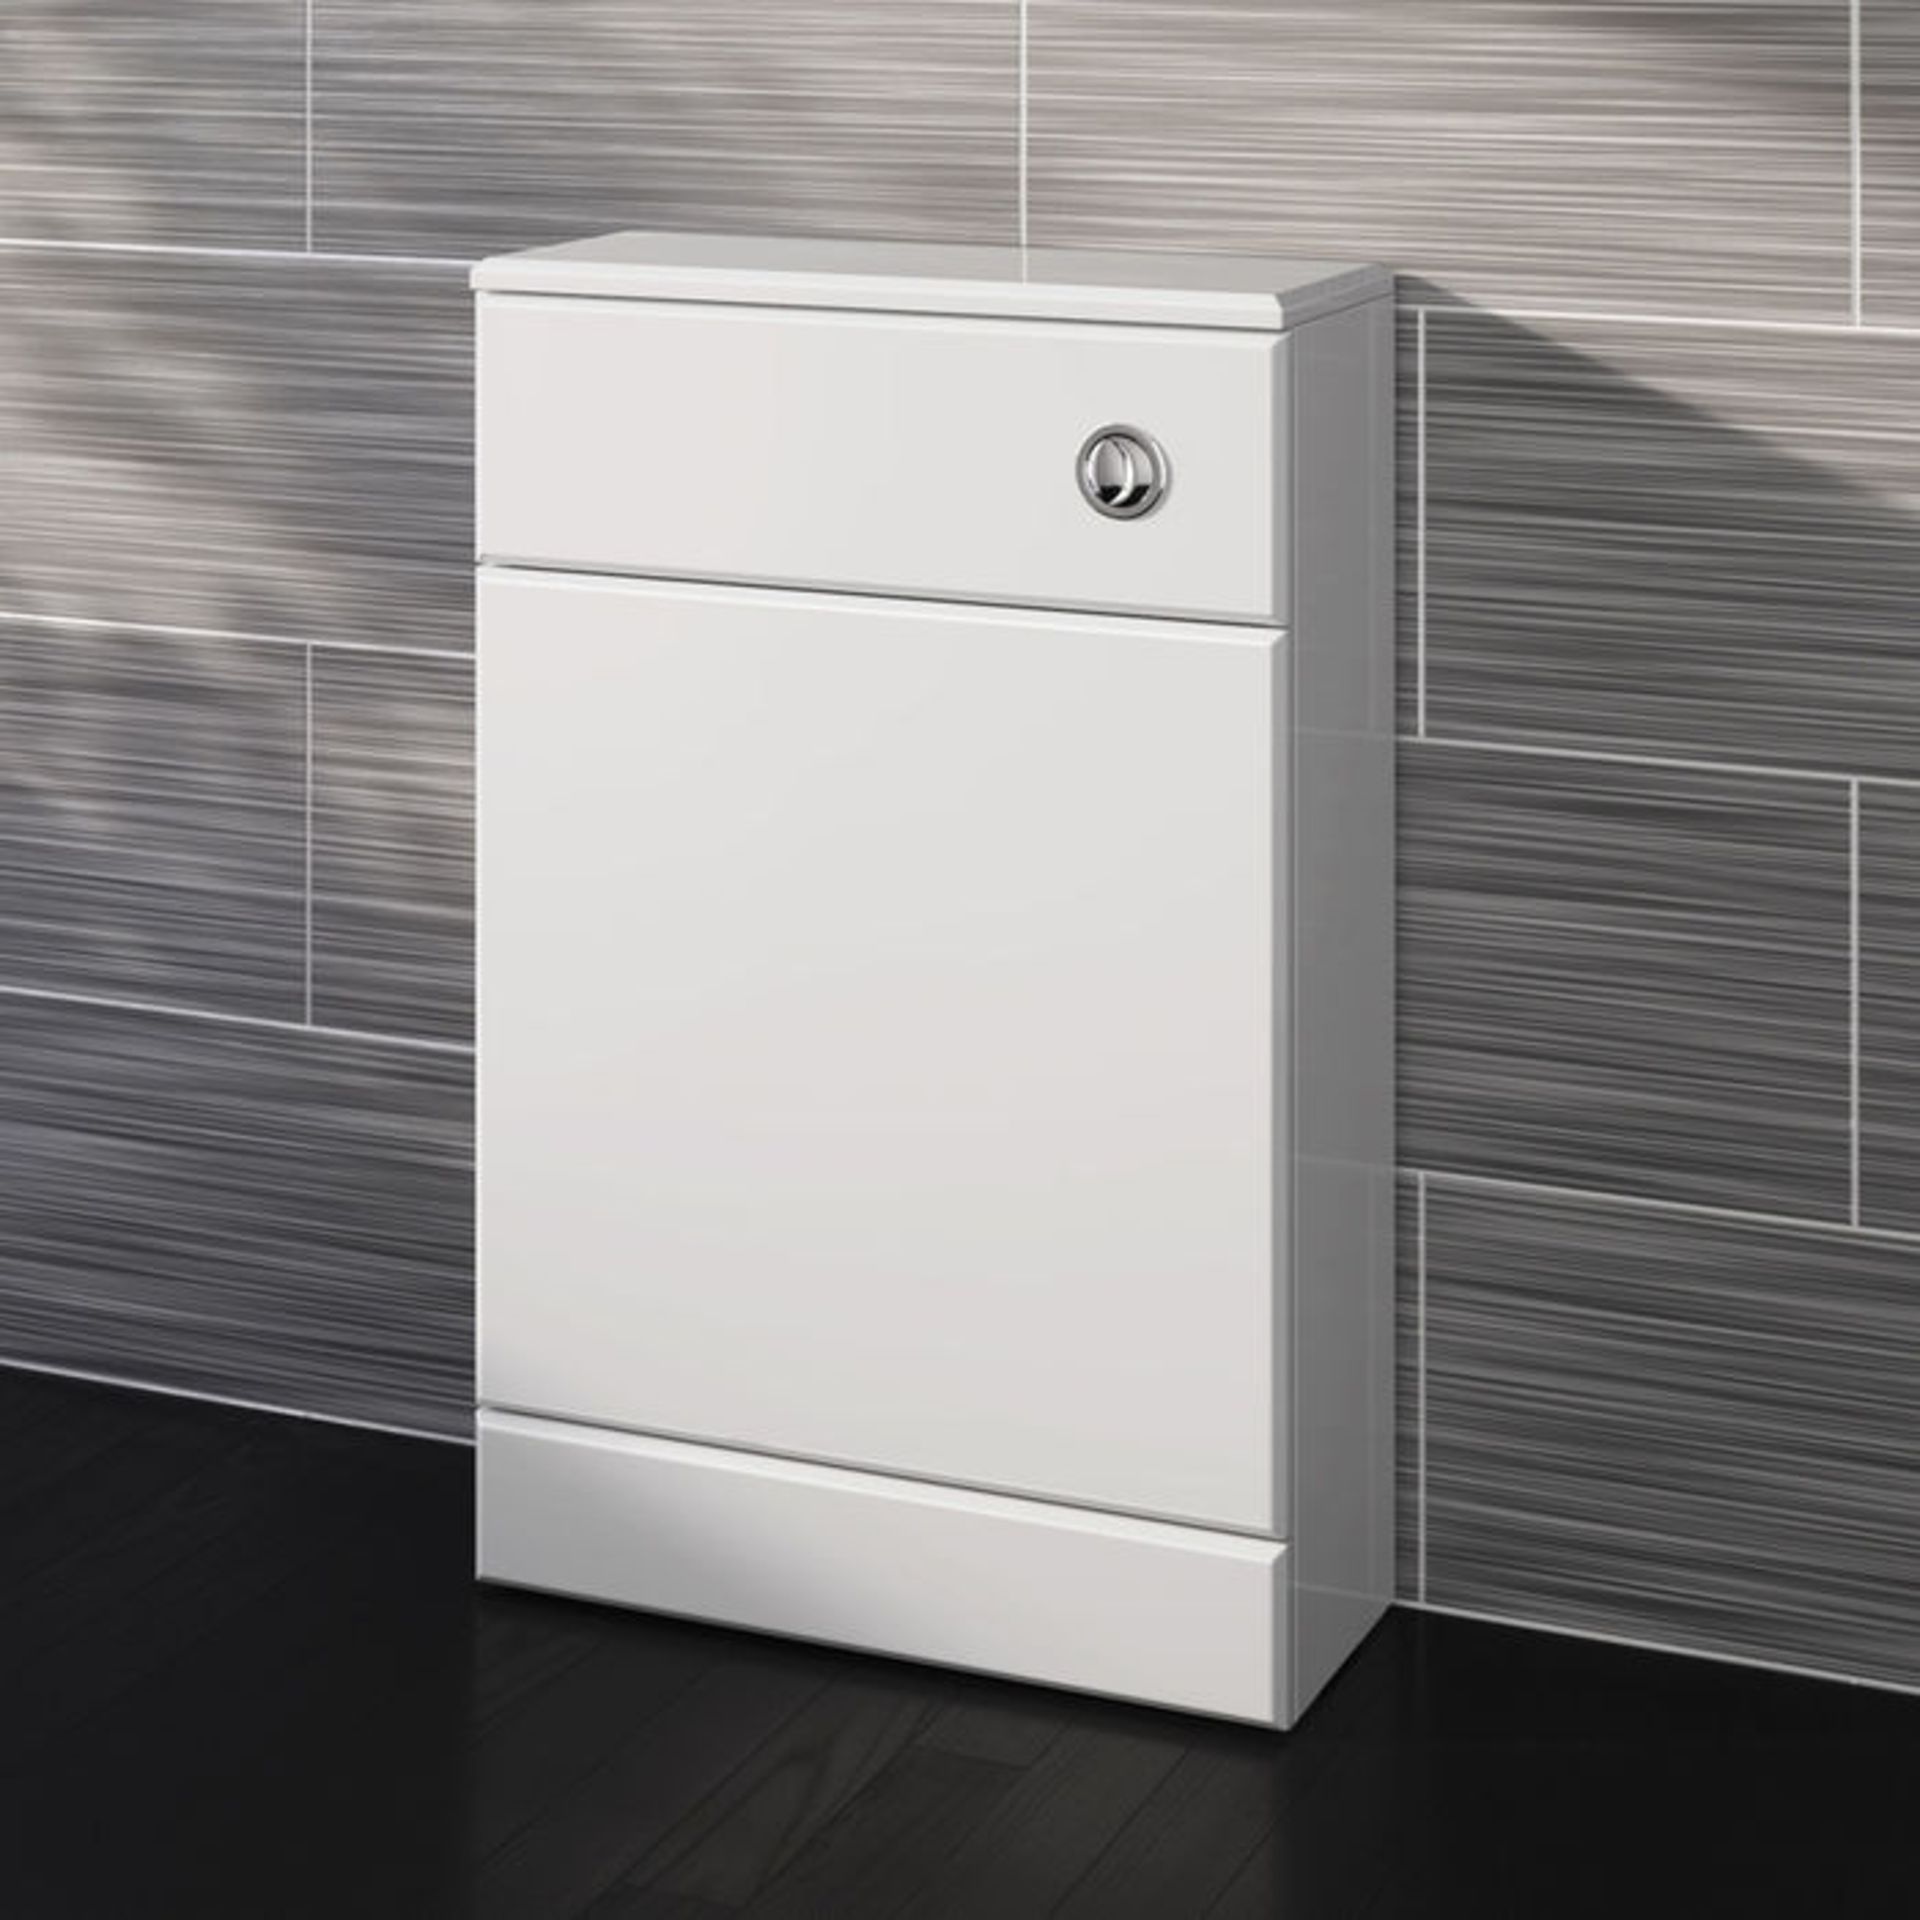 (TA90) 500x200mm Quartz Gloss White Back To Wall Toilet Unit. Pristine gloss white finish Conceals